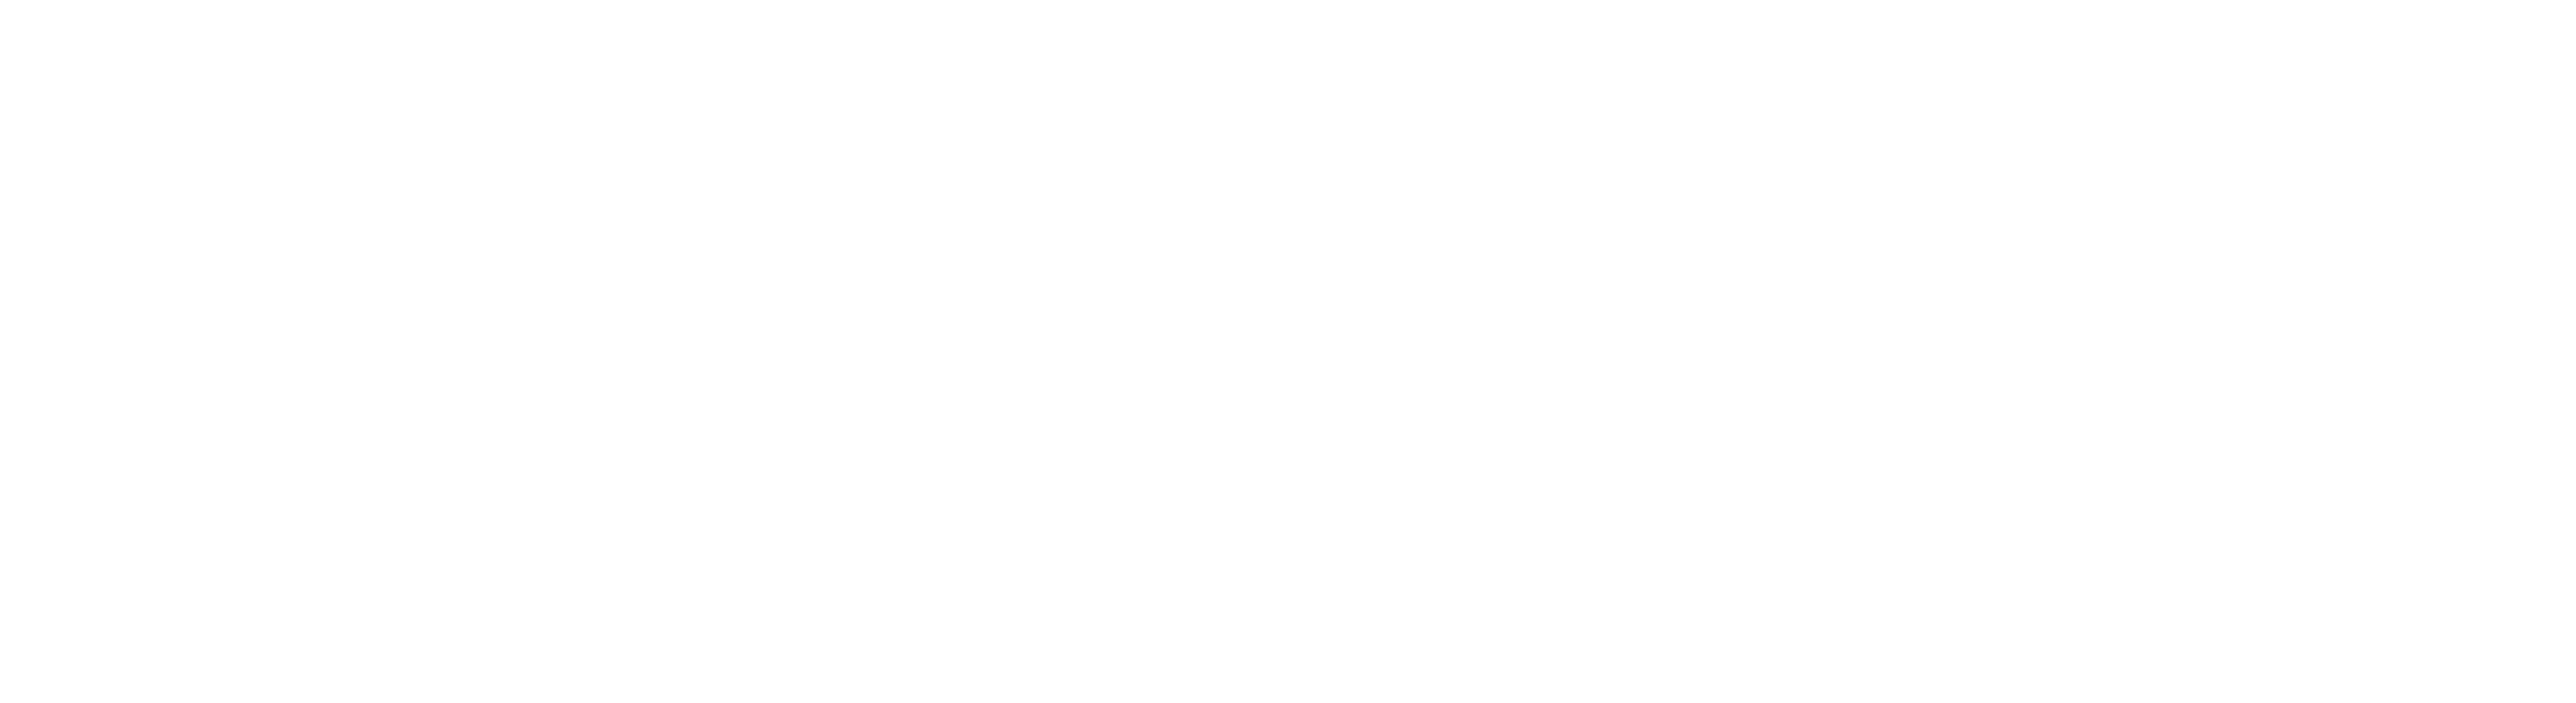 Arlington Democrats